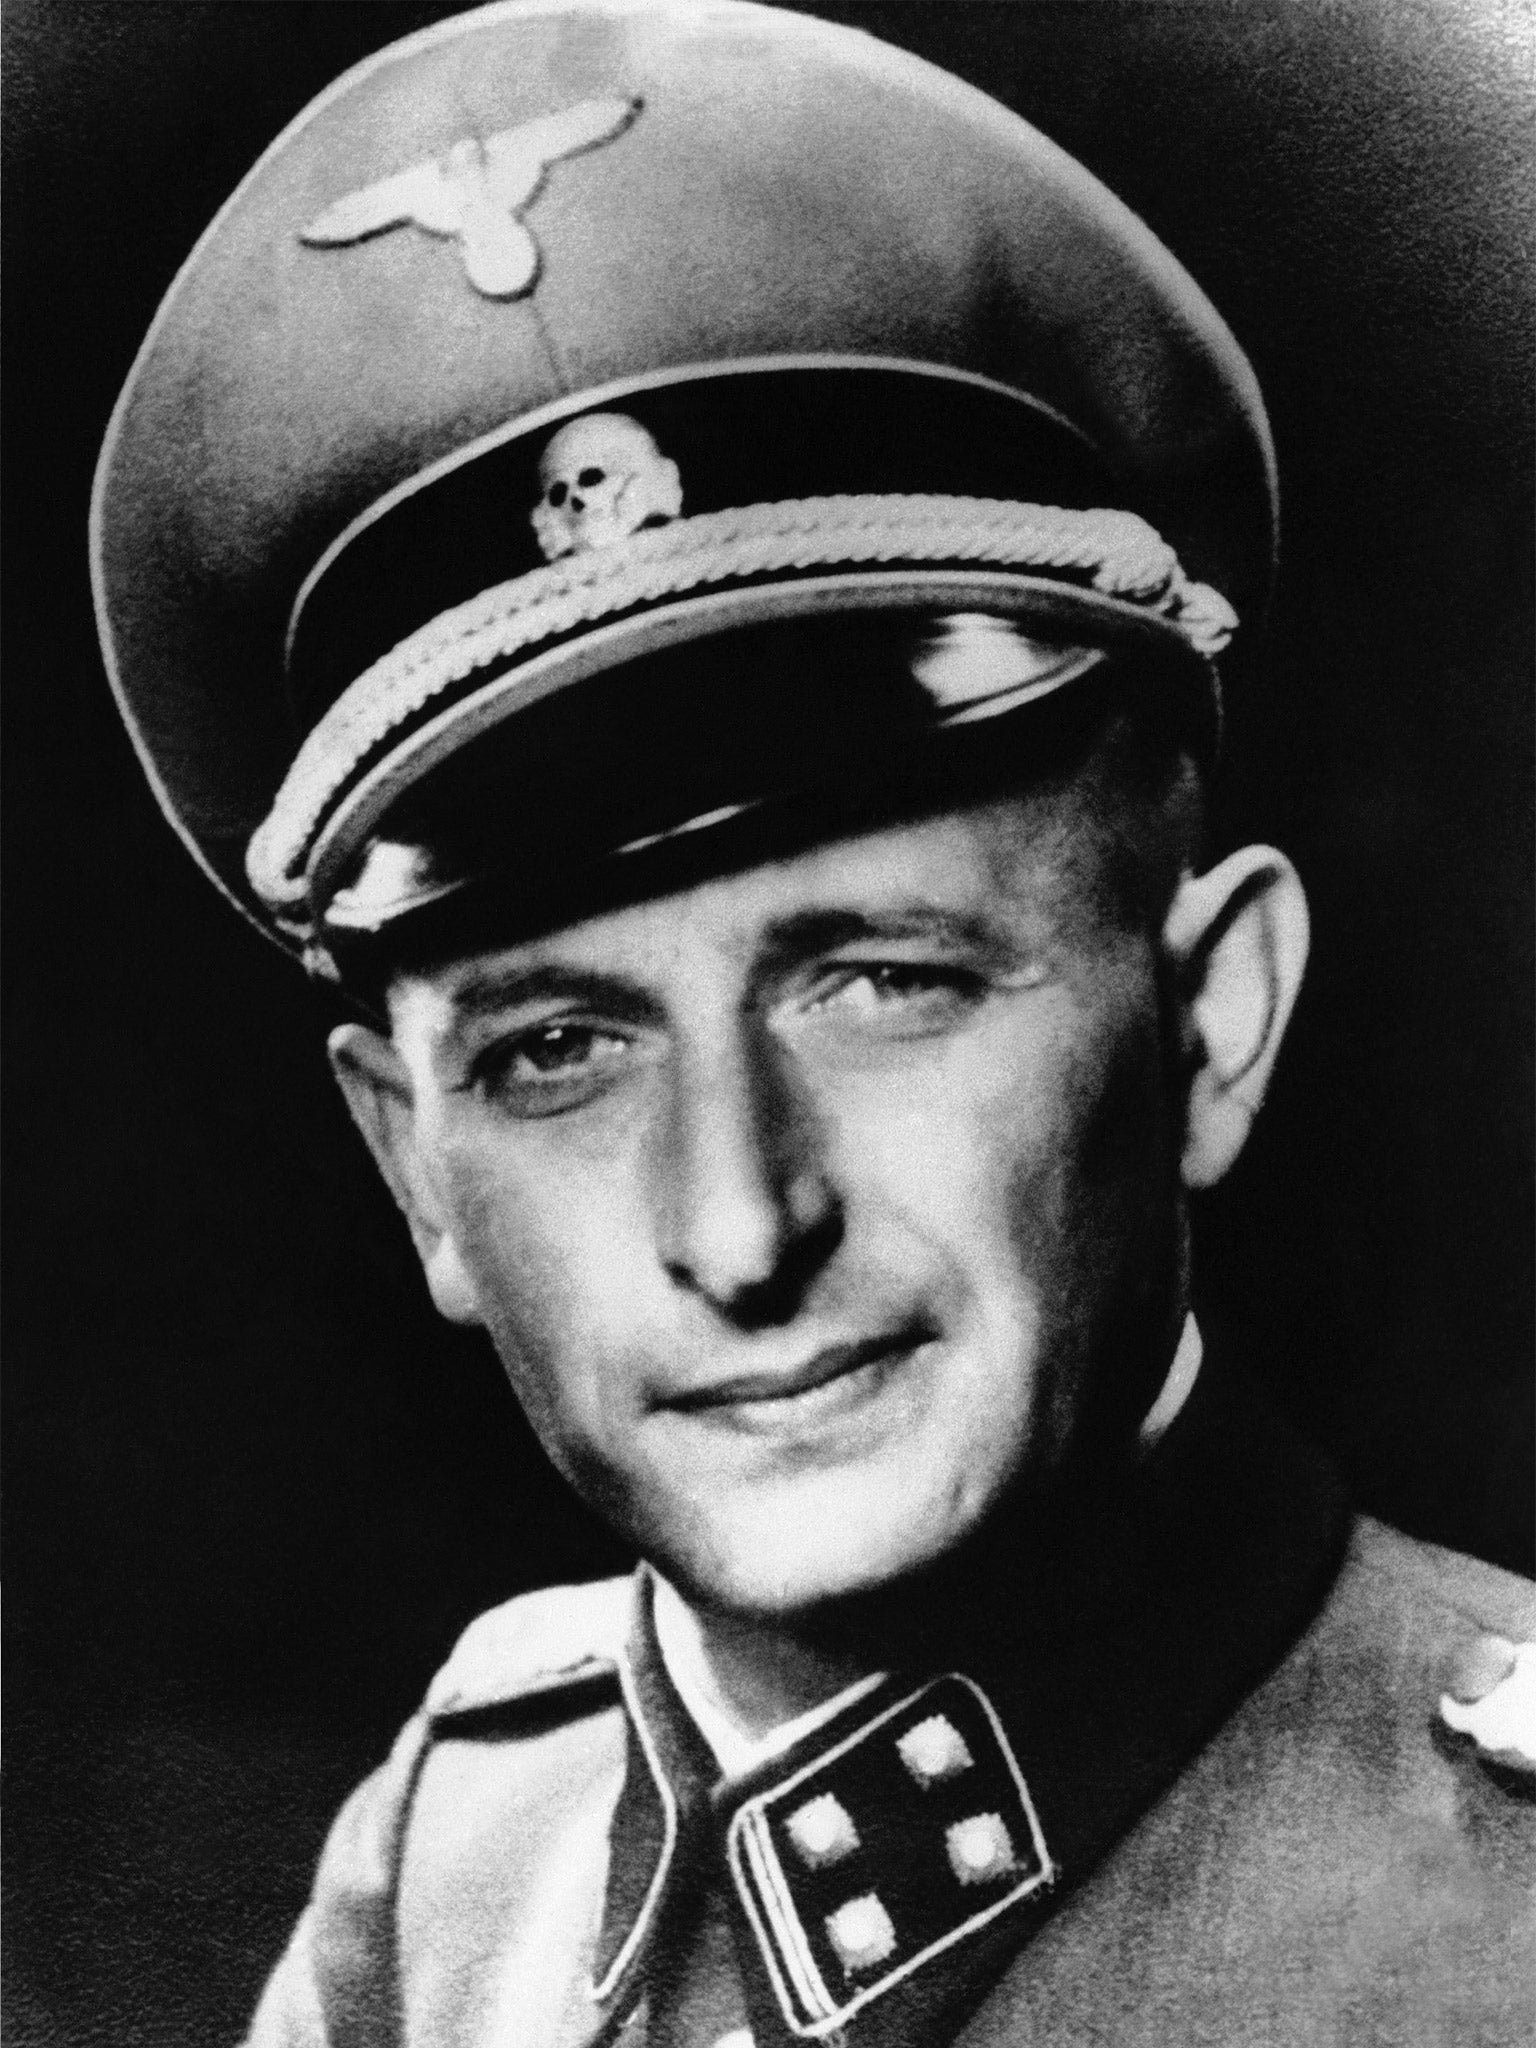 Holocaust architect Adolf Eichmann was captured in Buenos Aires